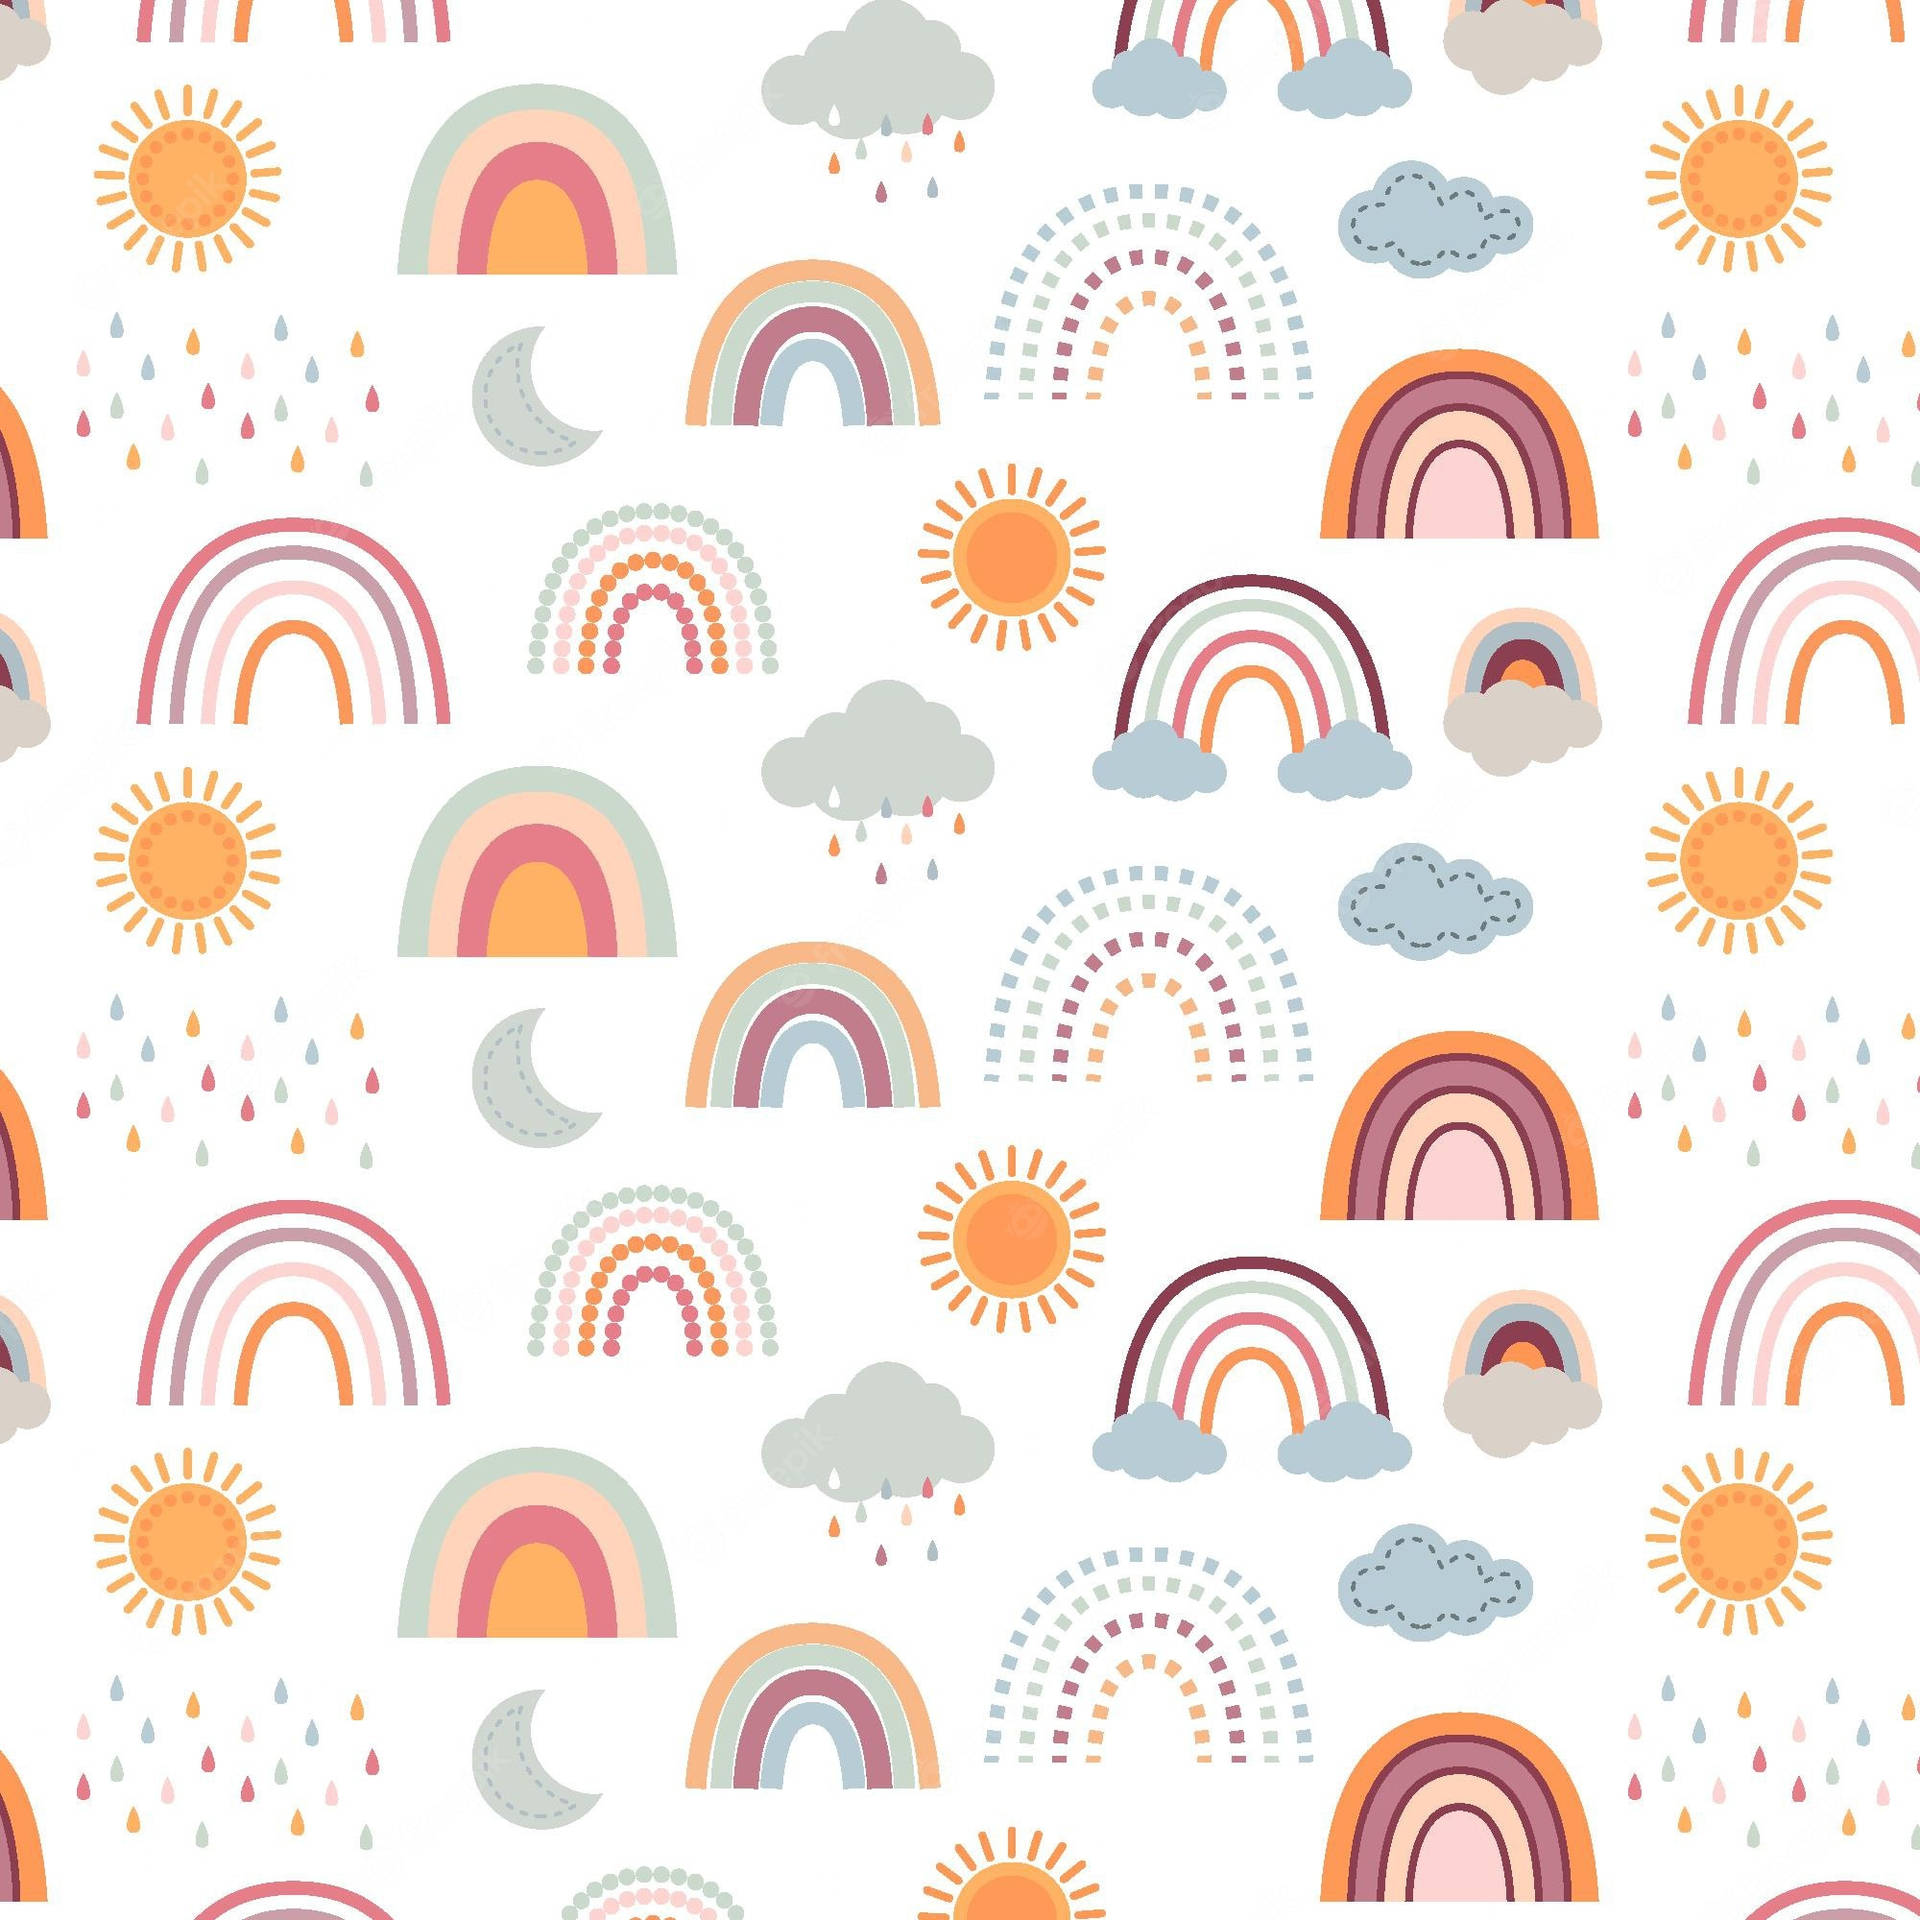 Släppin Glada Vibbar Med Denna Djärva Och Vackra Boho Rainbow-design På Din Dator Eller Telefon. Wallpaper